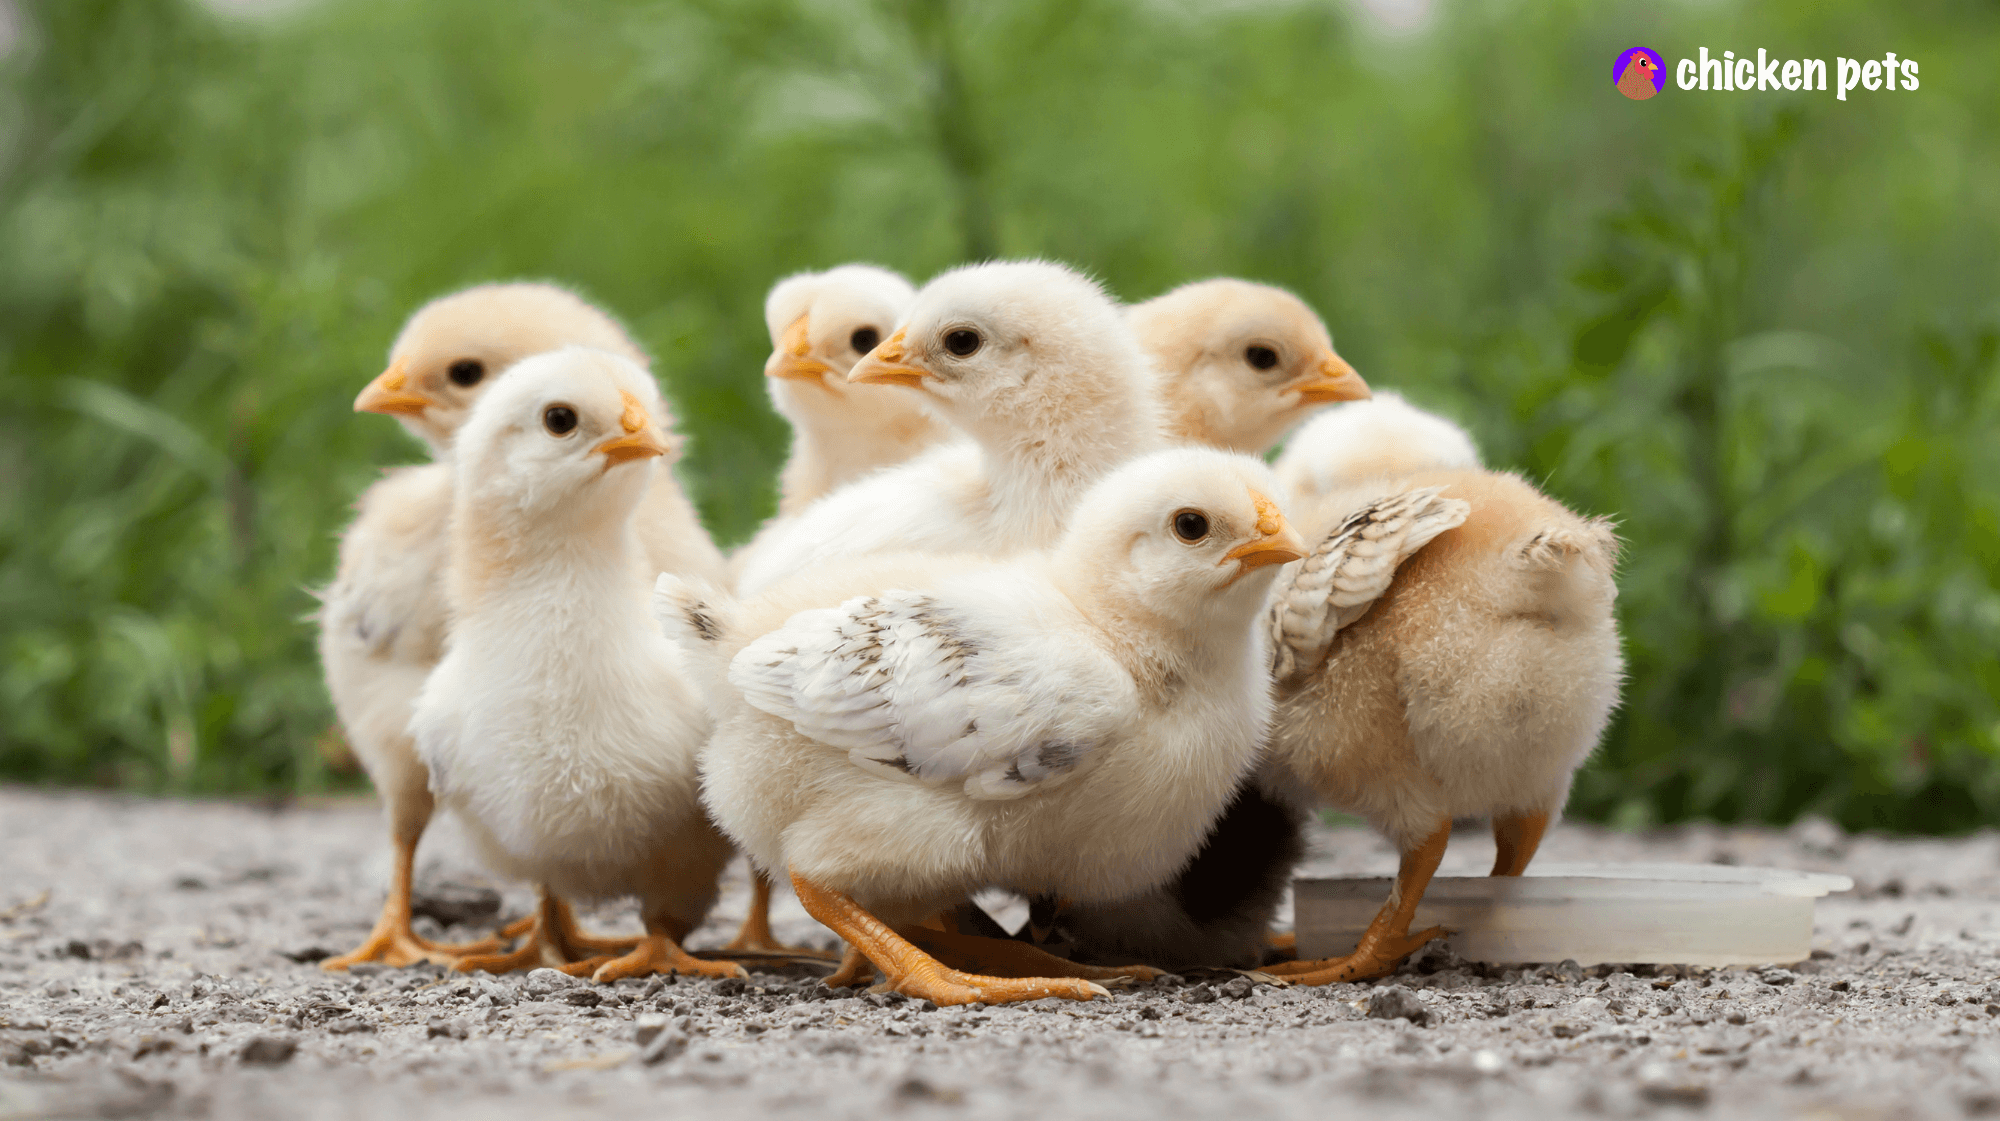 baby chickens chicks